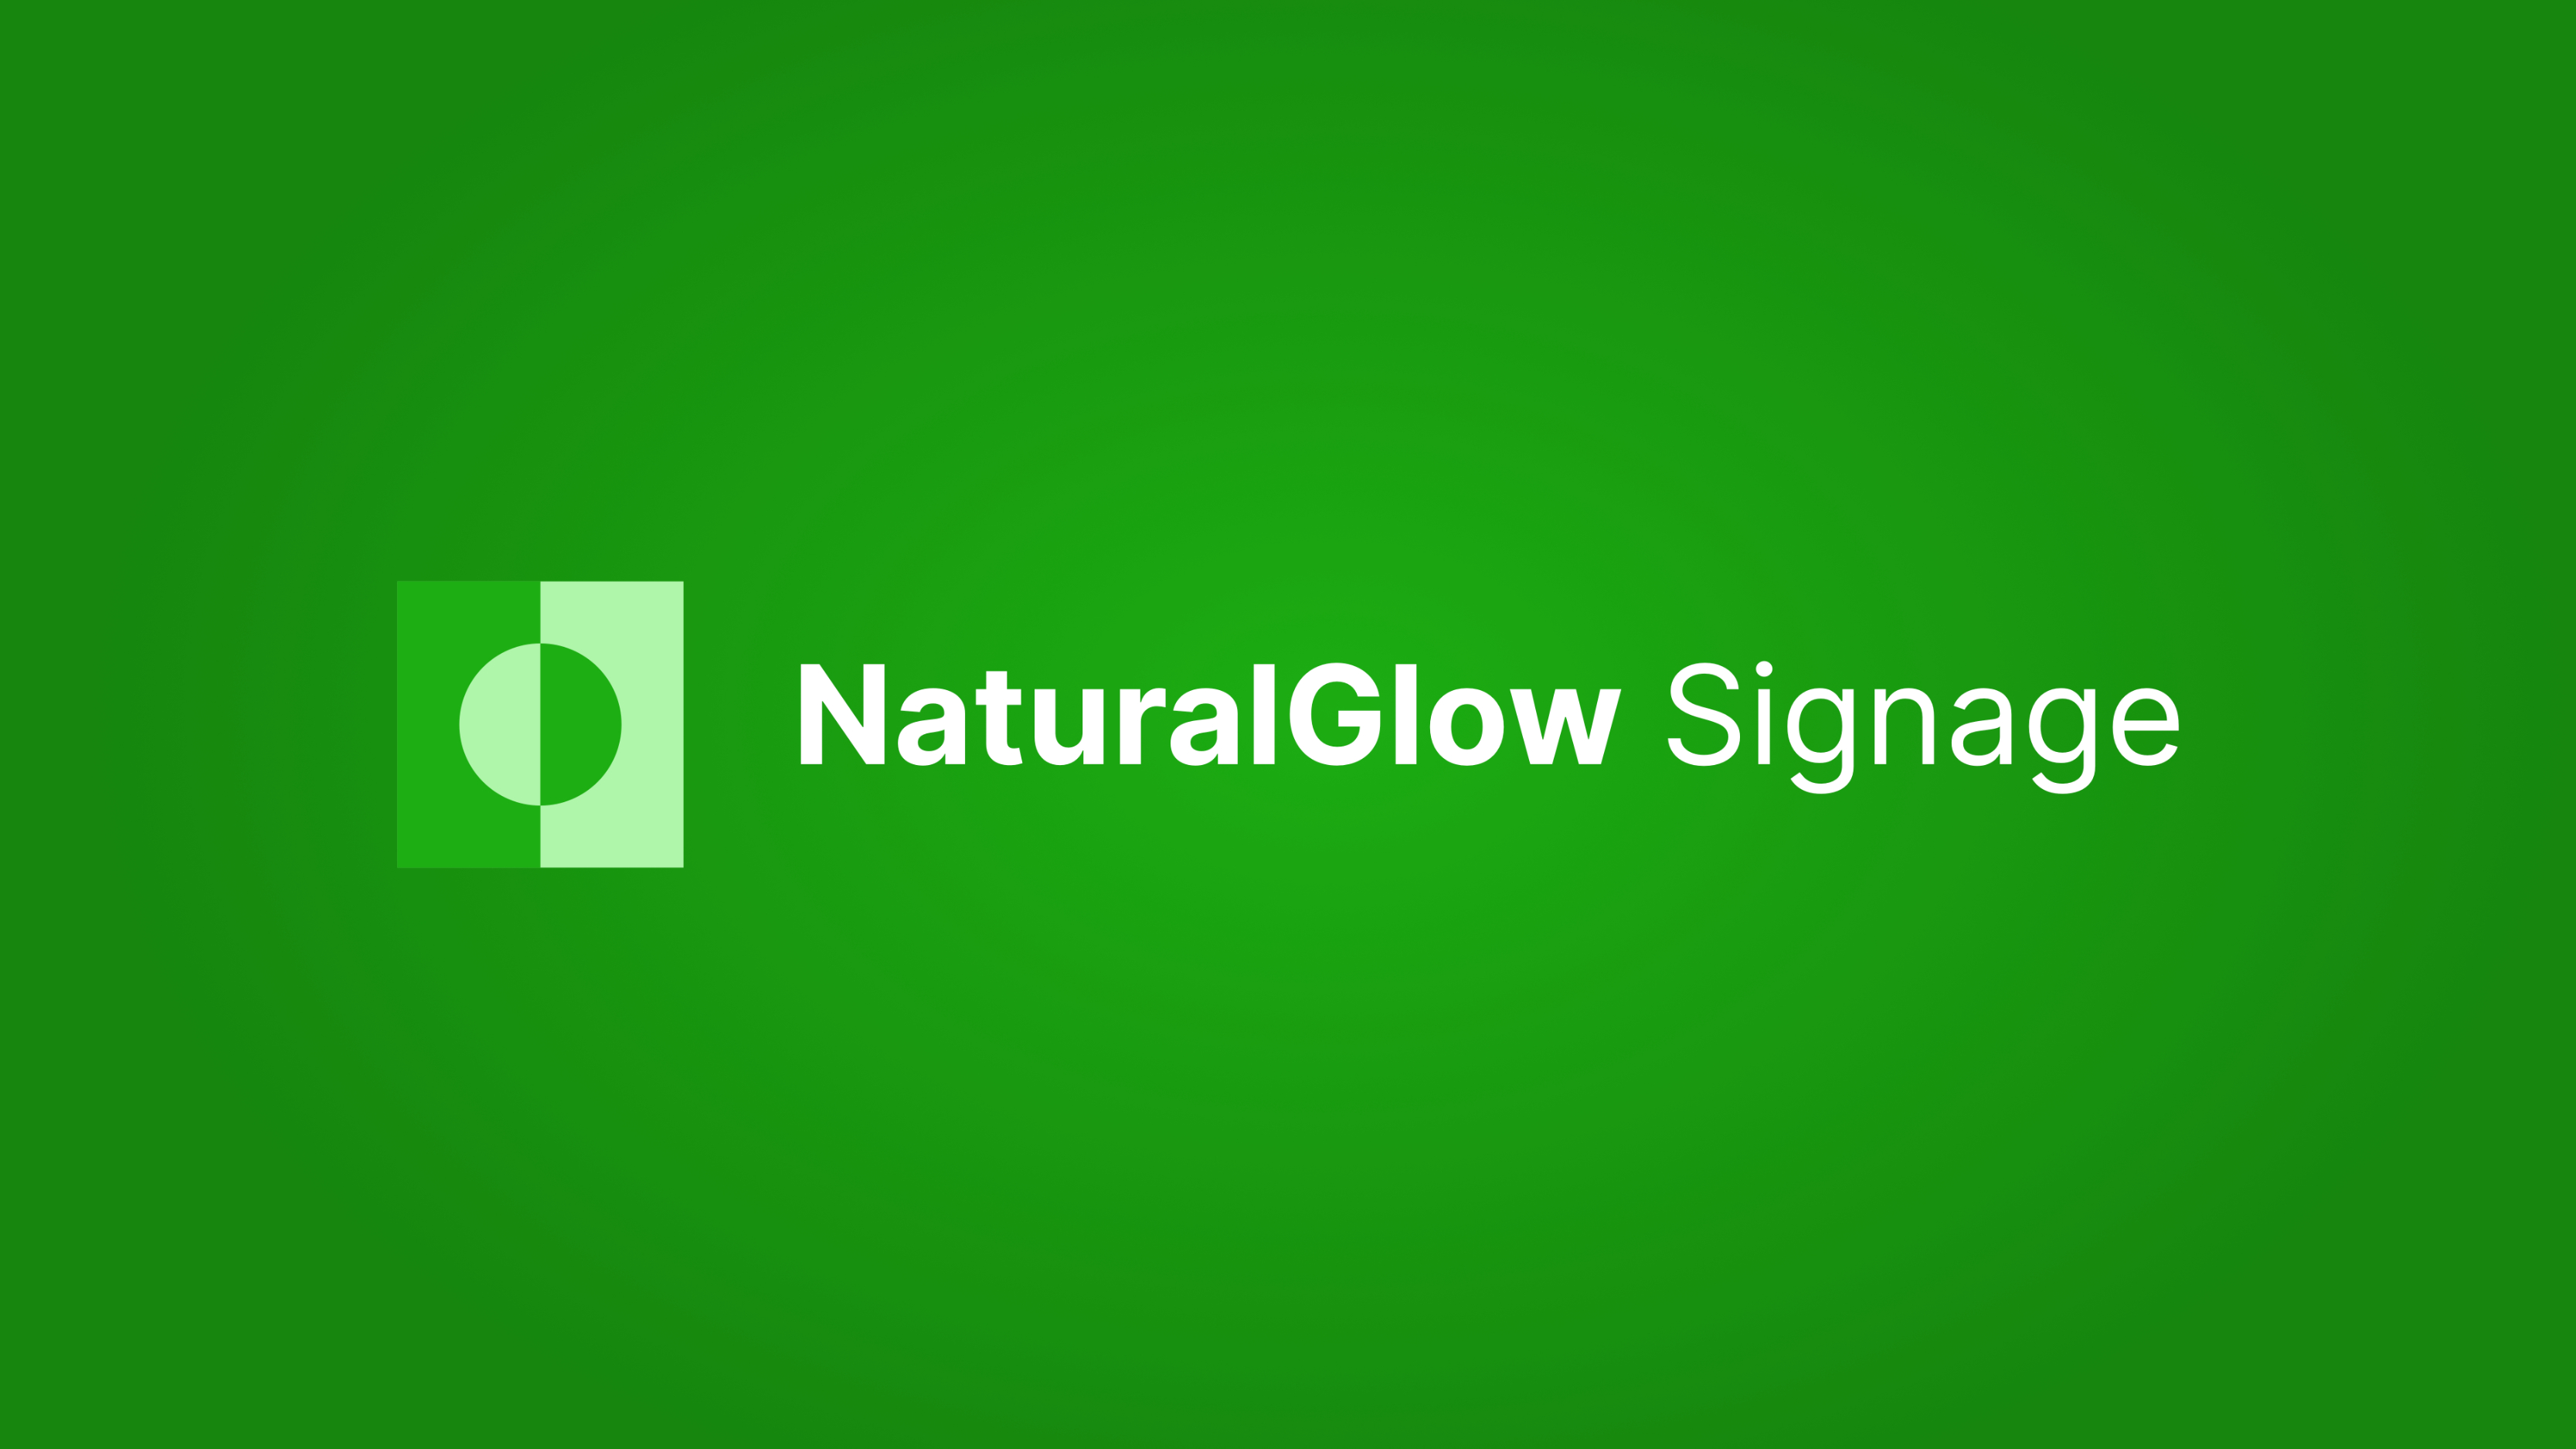 NaturalGlow Signage